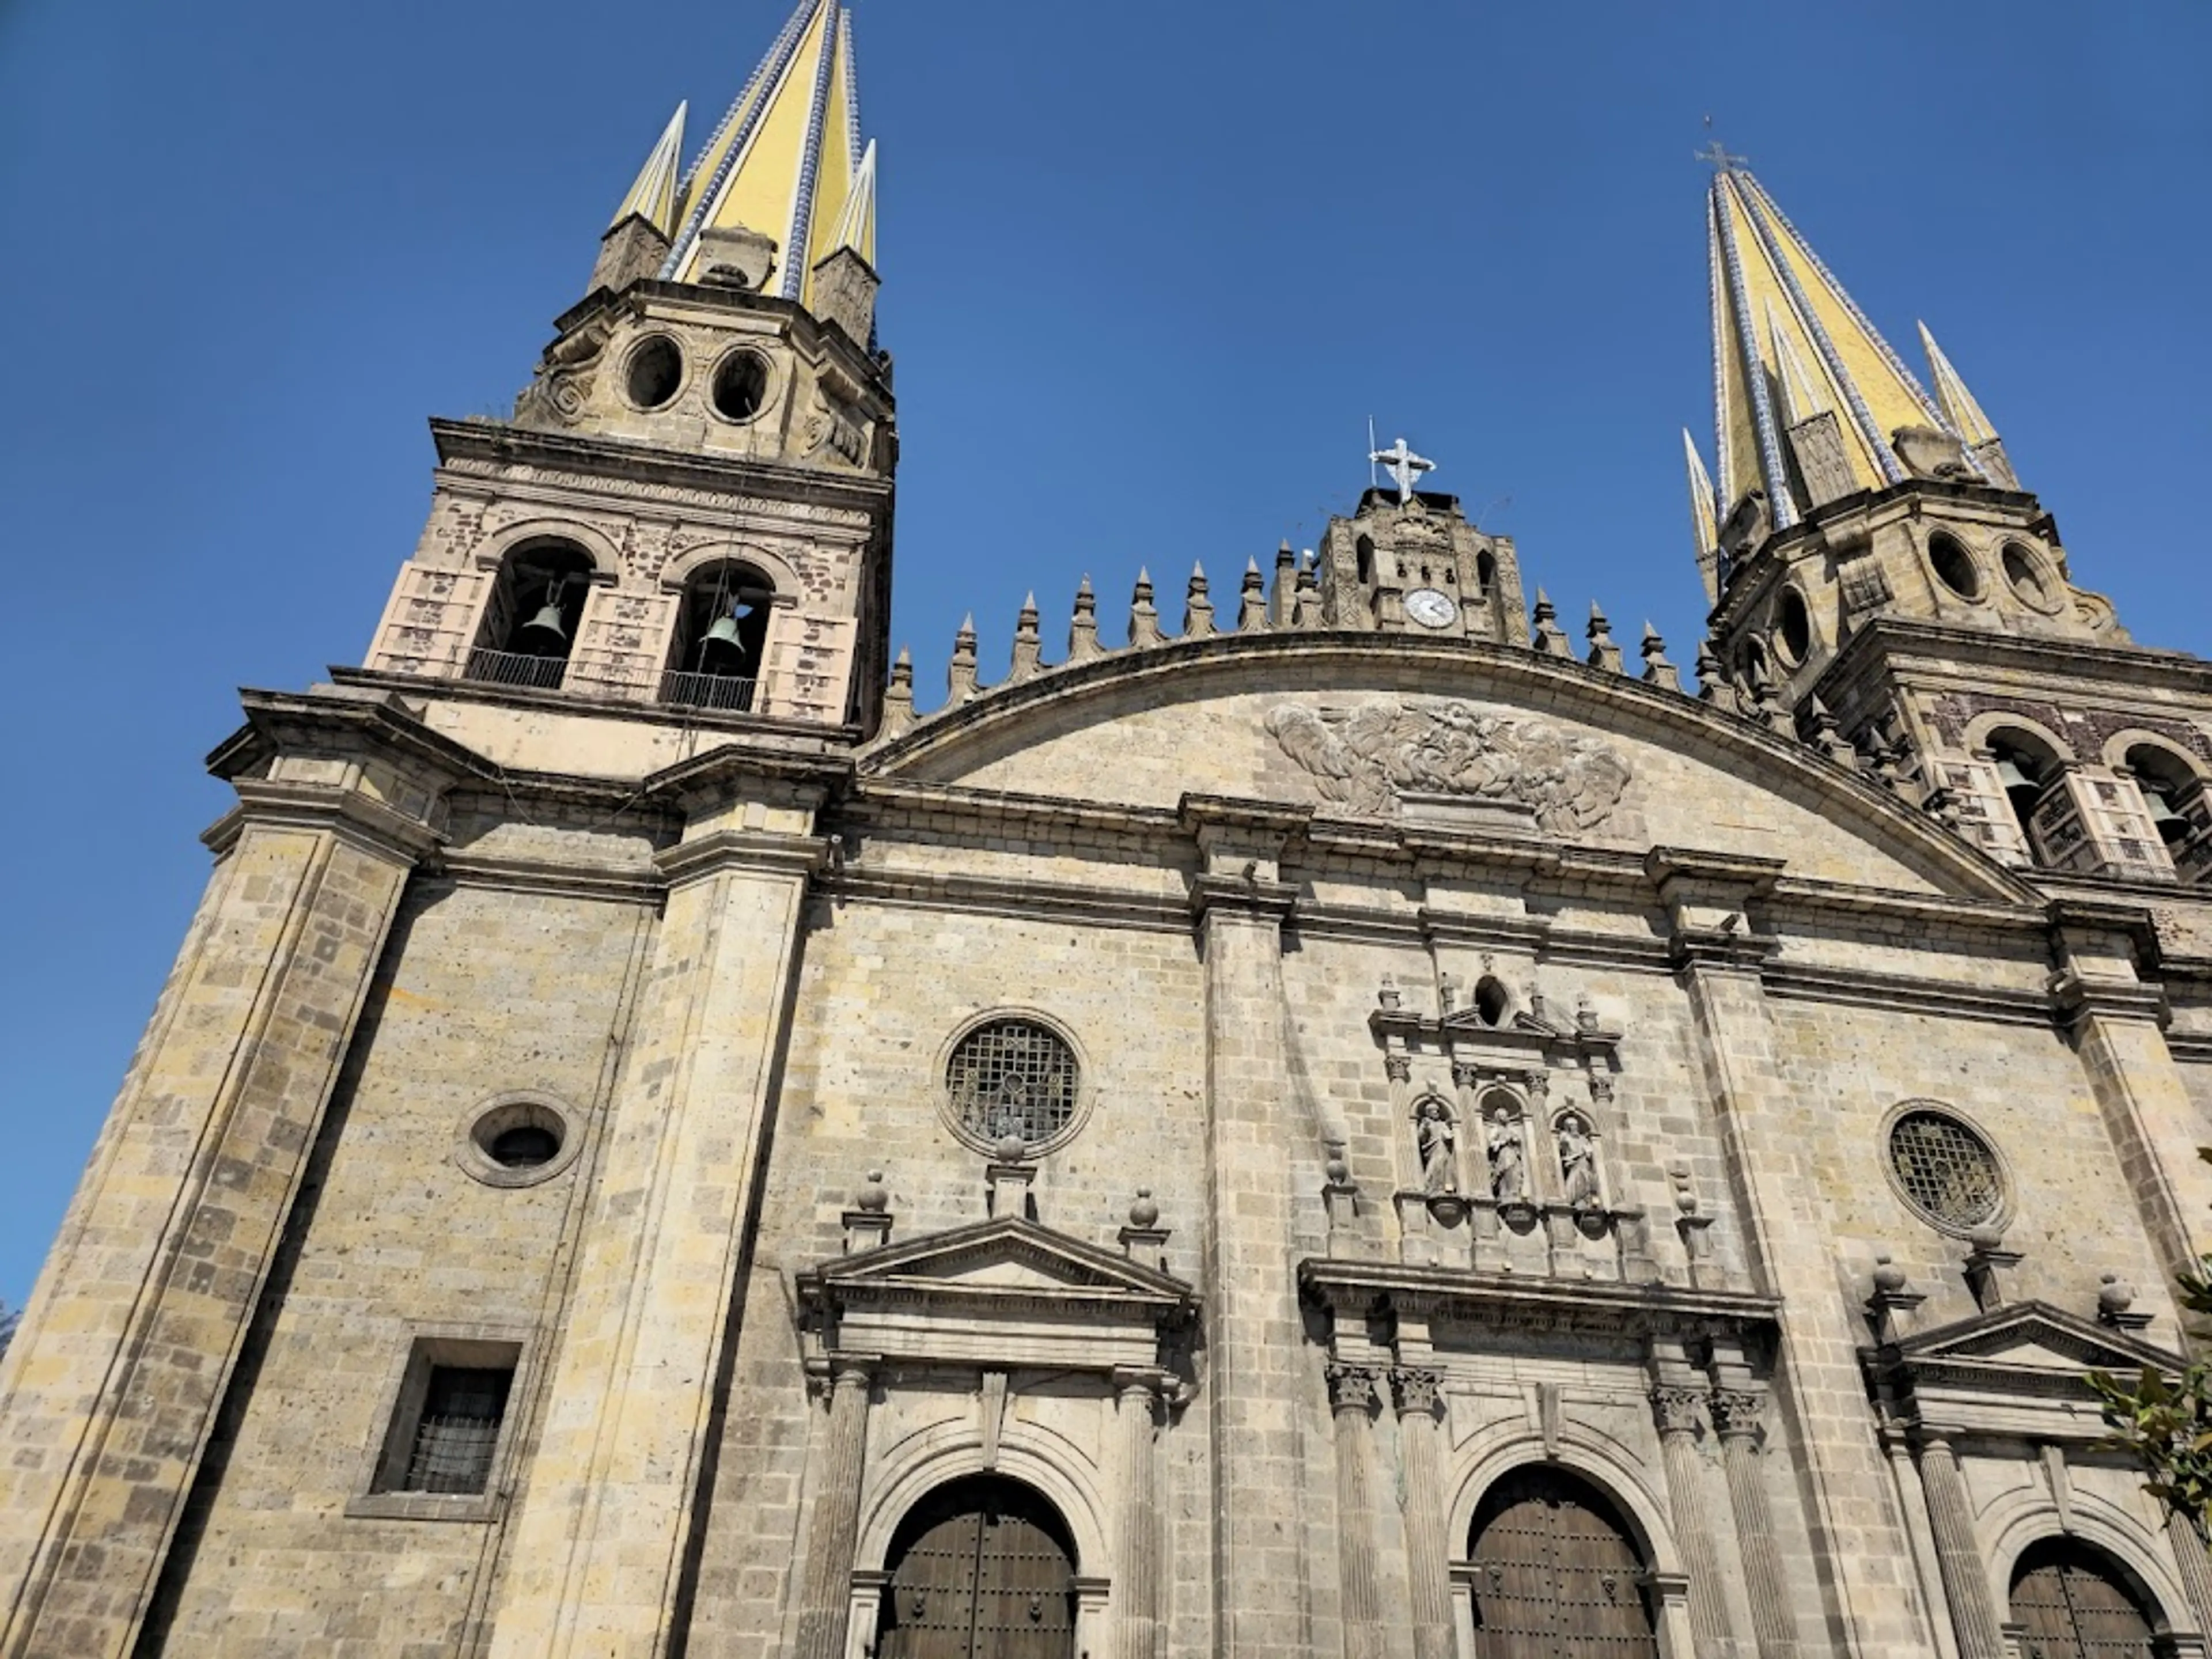 Guadalajara Cathedral